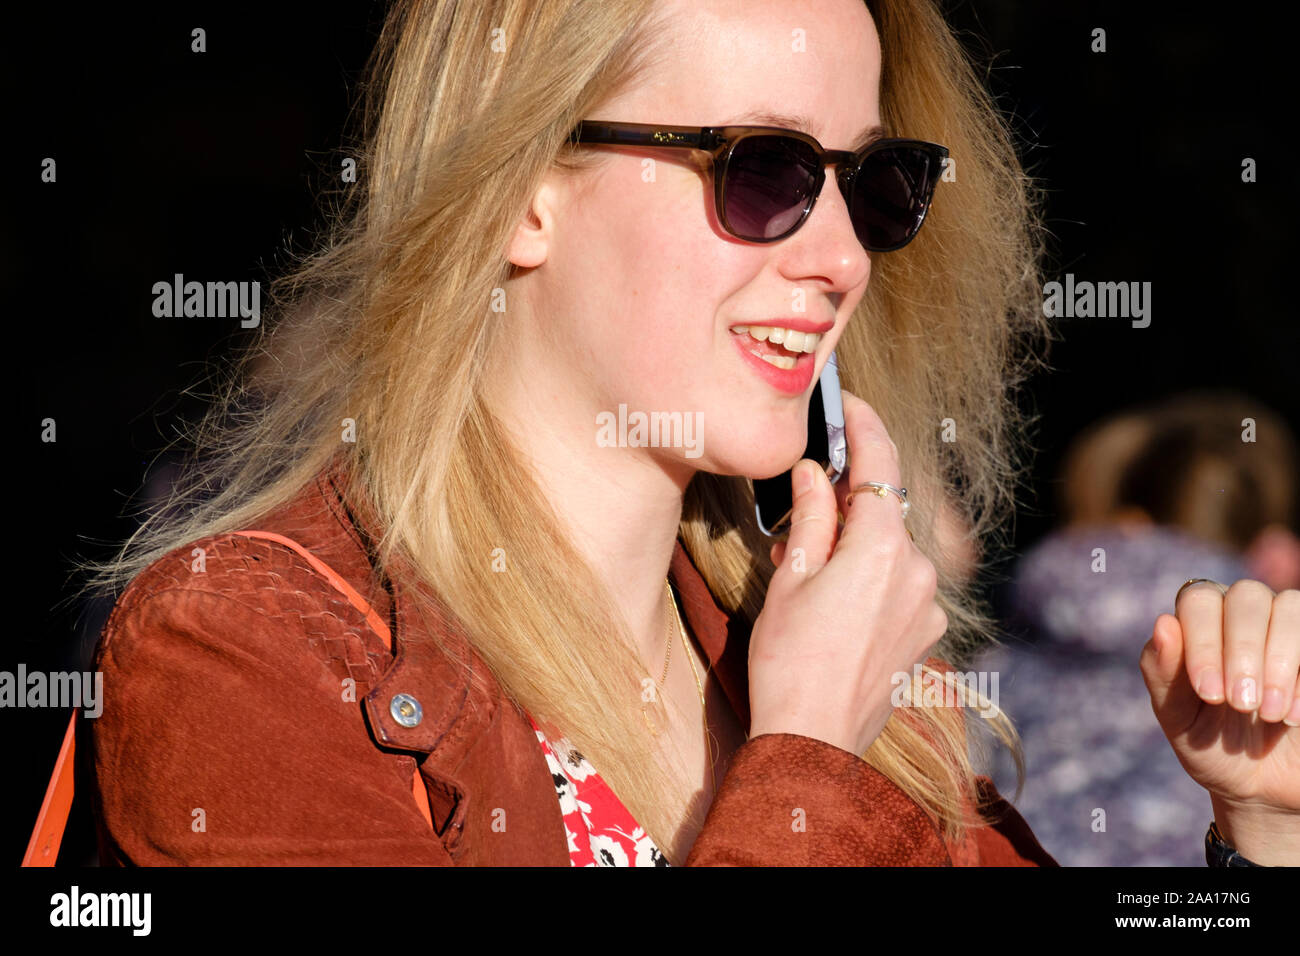 Weiblich, 20er Jahre, blonde Haare, modisches Freizeitkleid, Sonnenbrille, mit Handy, lächelnd auf London Street. Stockfoto